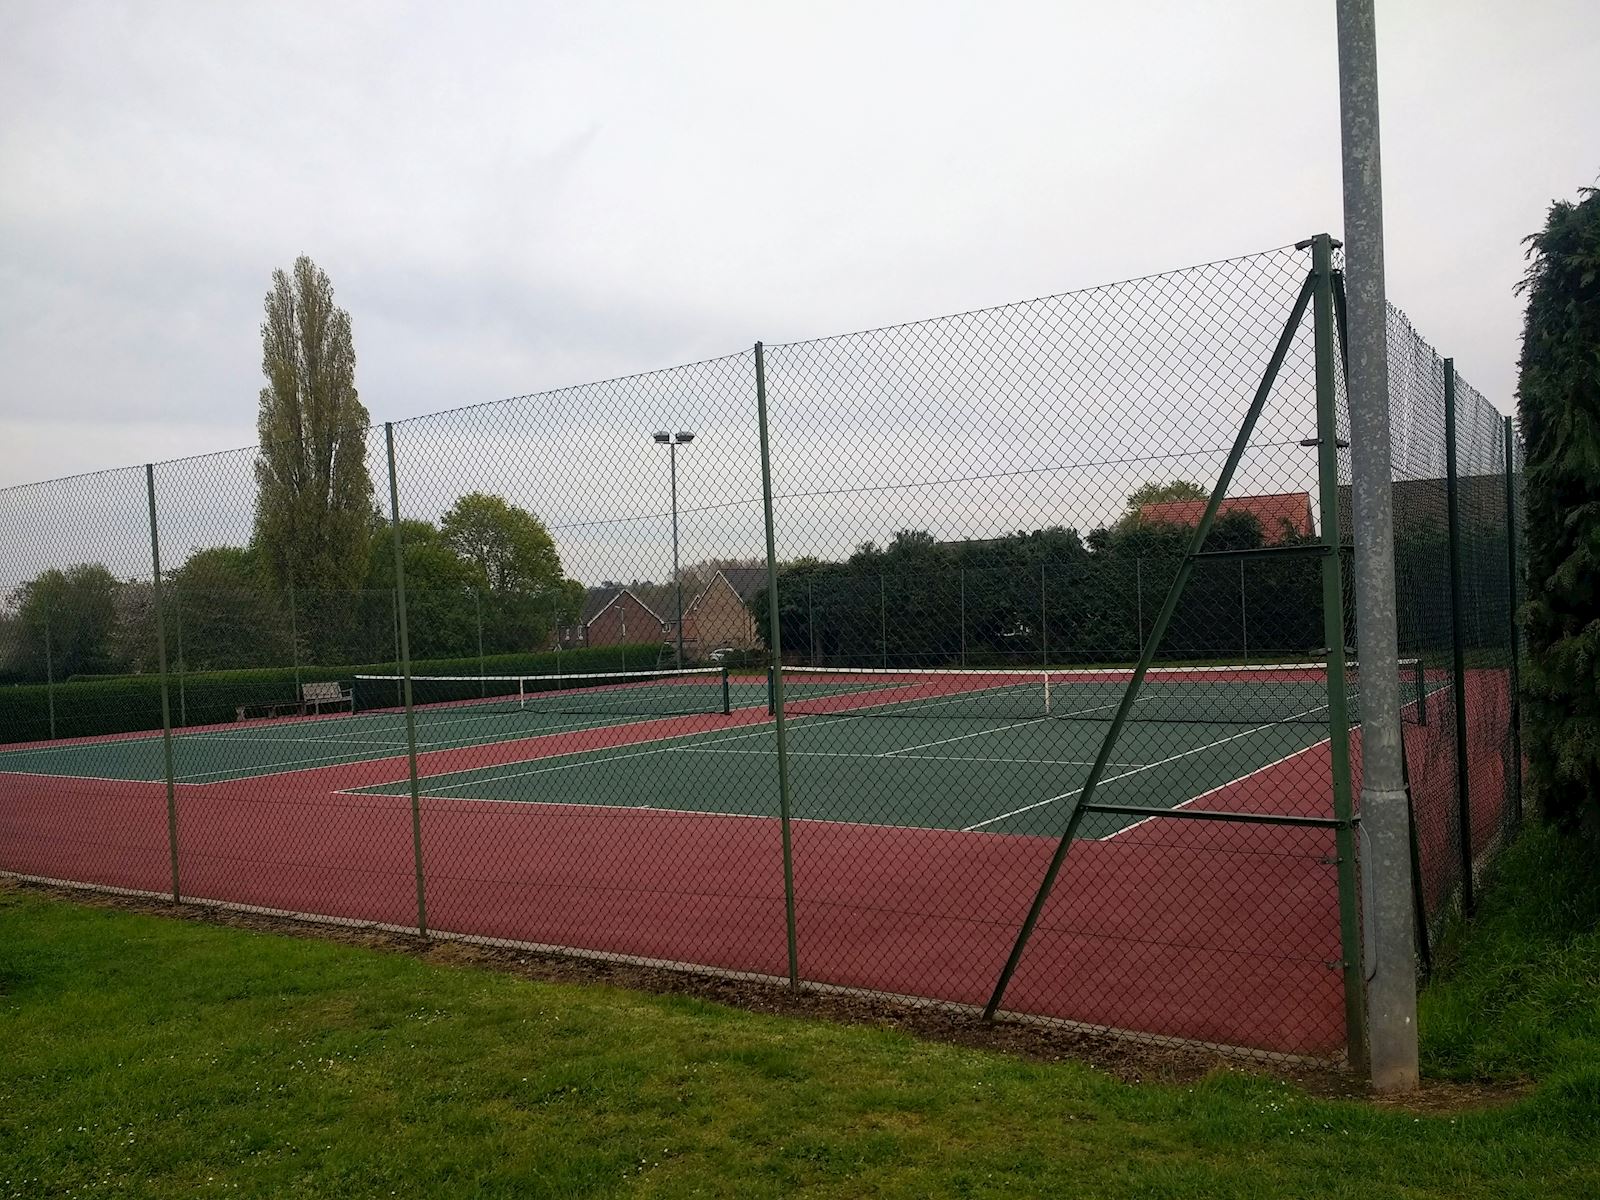 Sproughton Tennis Club